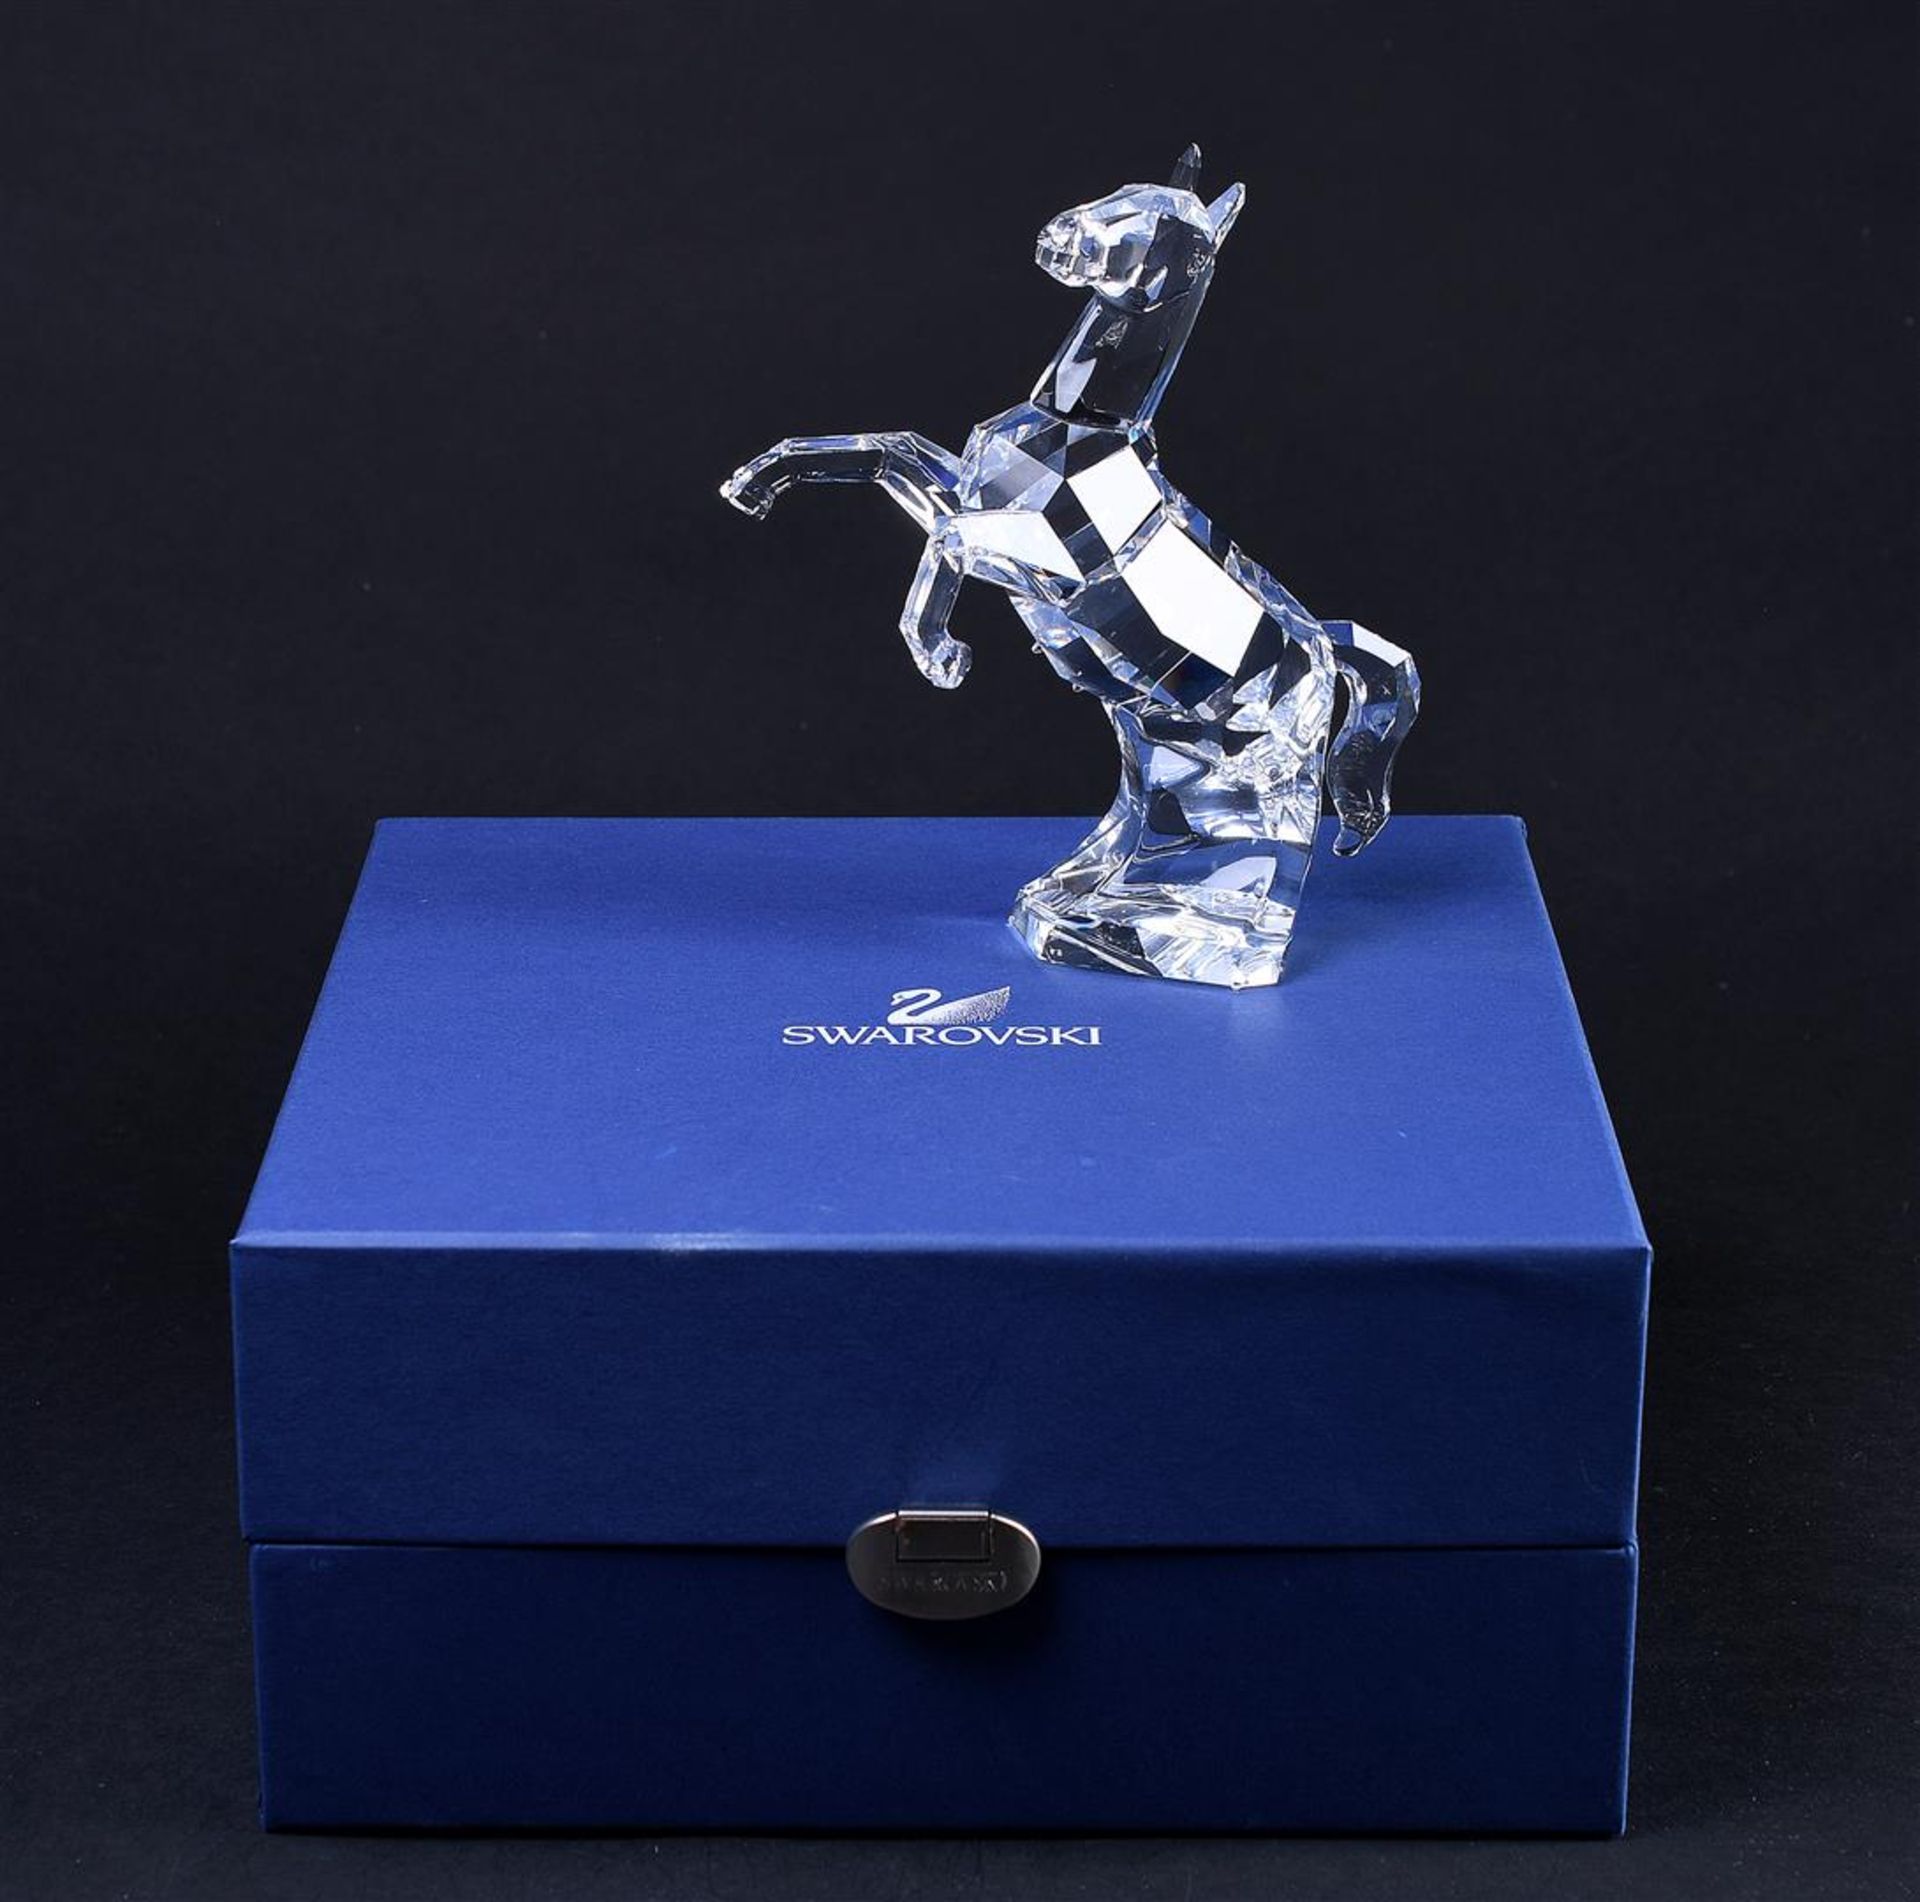 Swarovski, horse, Year of issue 2004, 660218. Includes original box.
H. 13,8 cm. - Bild 4 aus 4